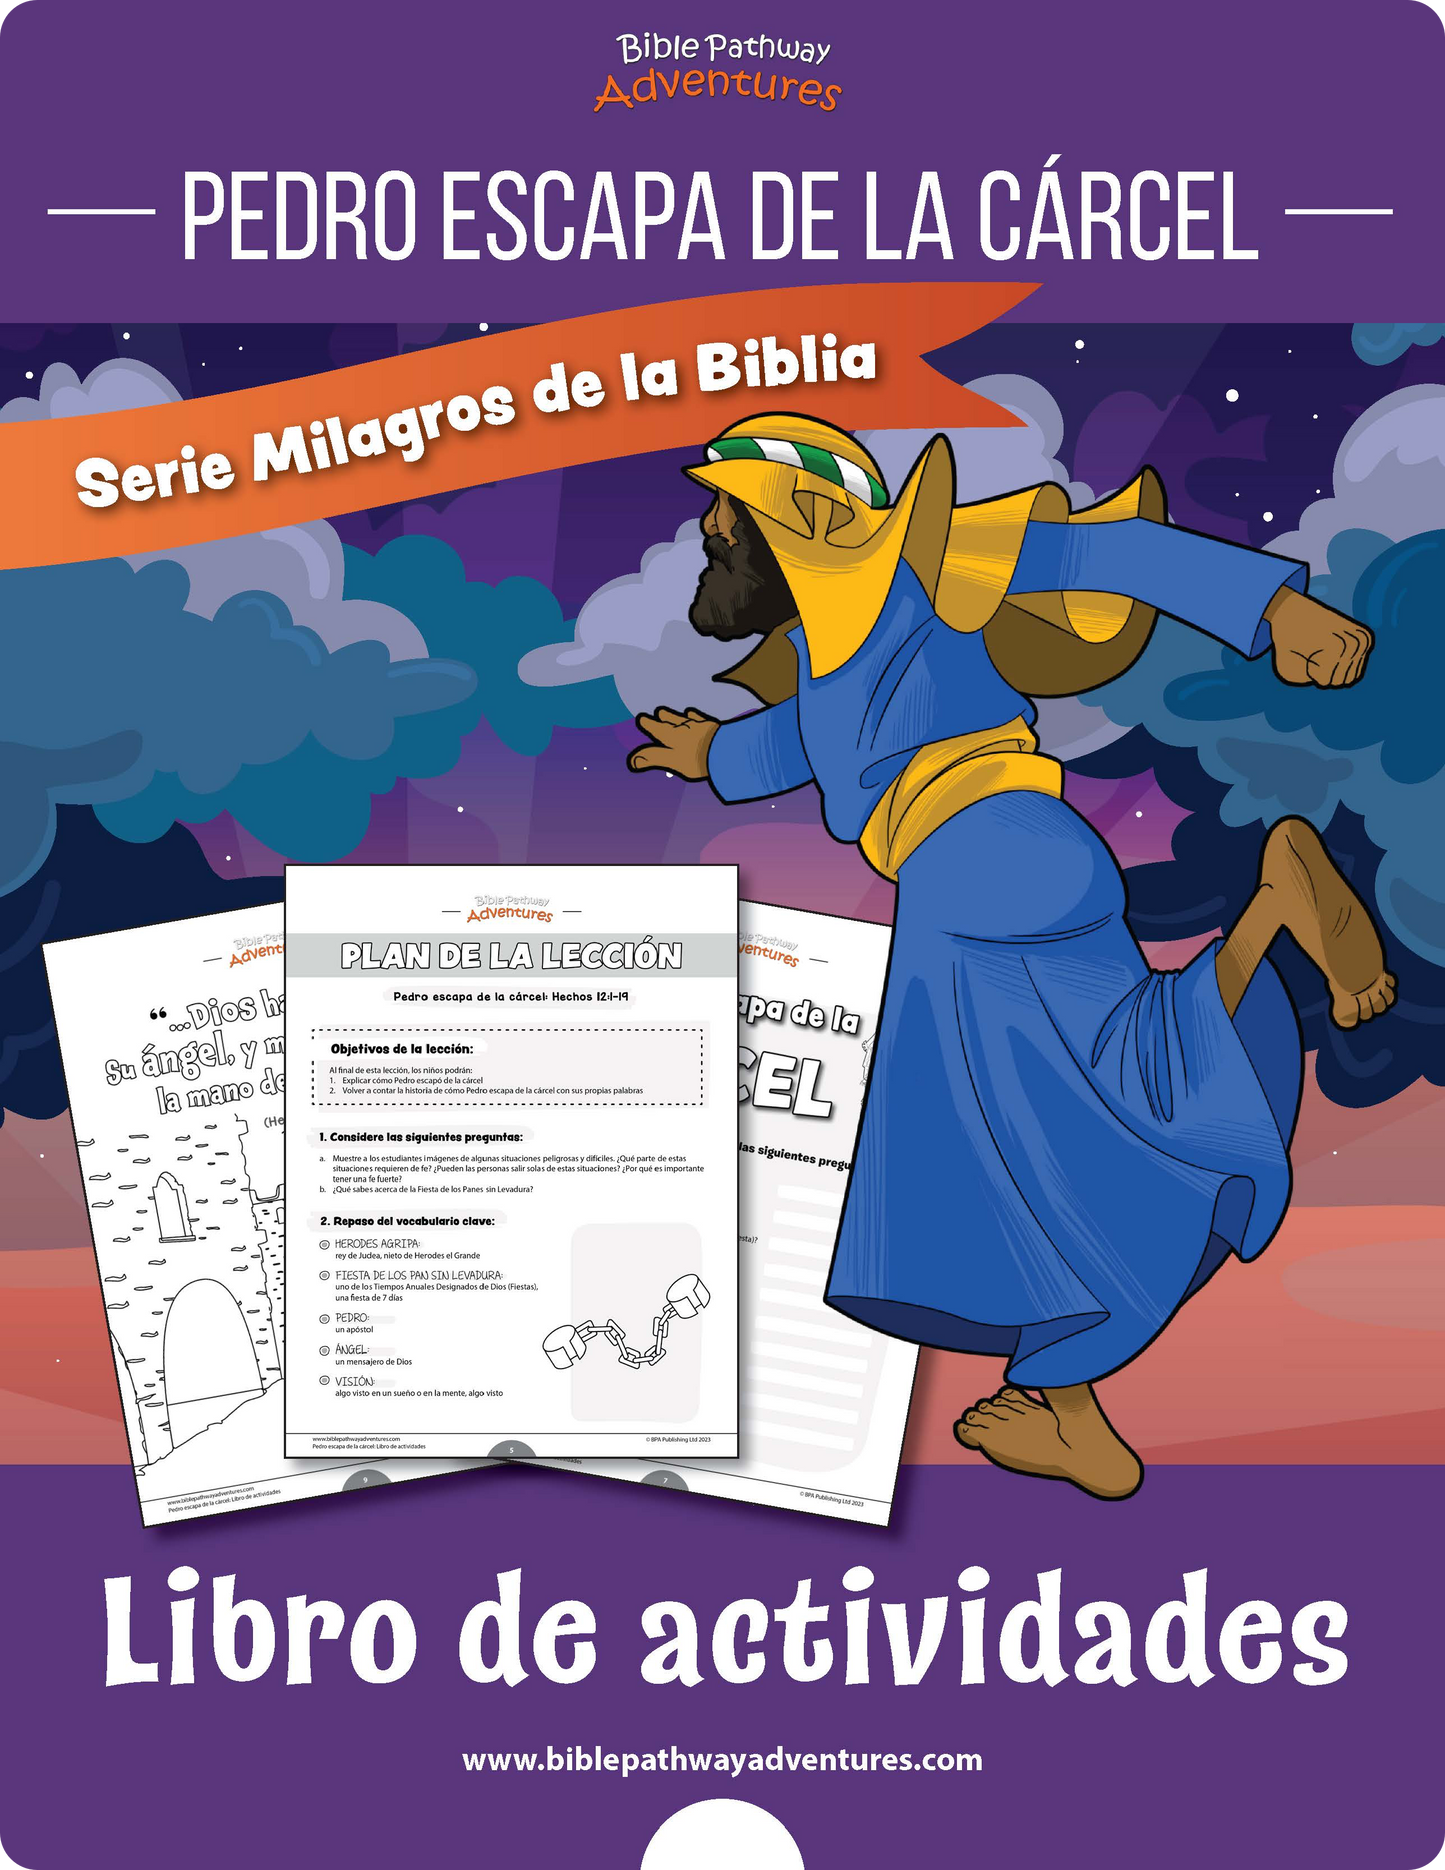 Pedro escapa de la cárcel: Libro de actividades (PDF)